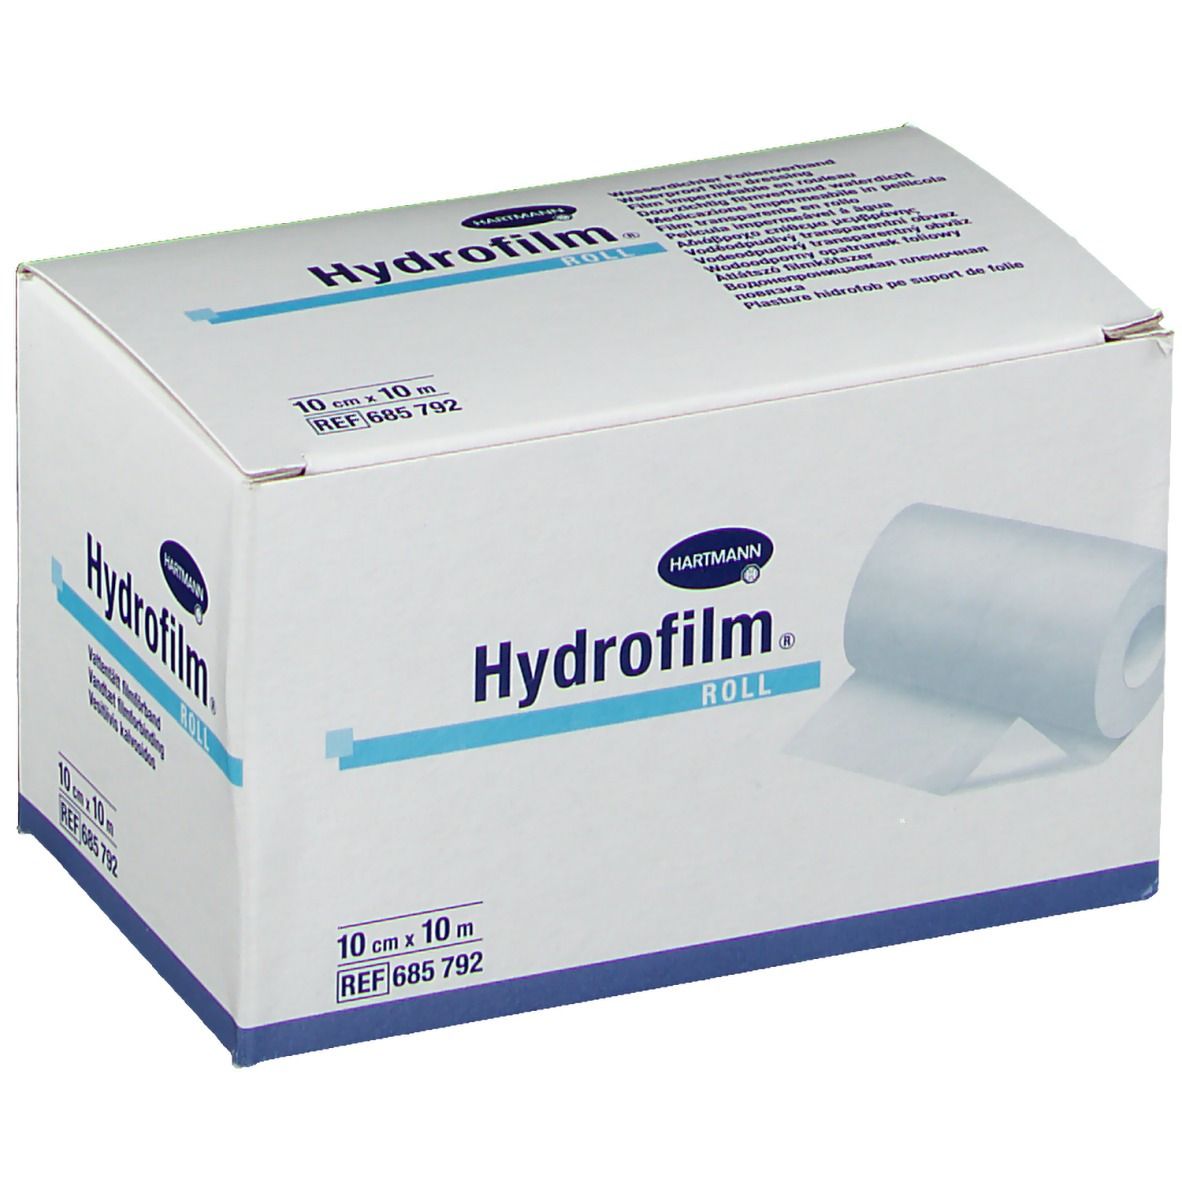 Hartmann Hydrofilm Roll 10 cm x 10 m